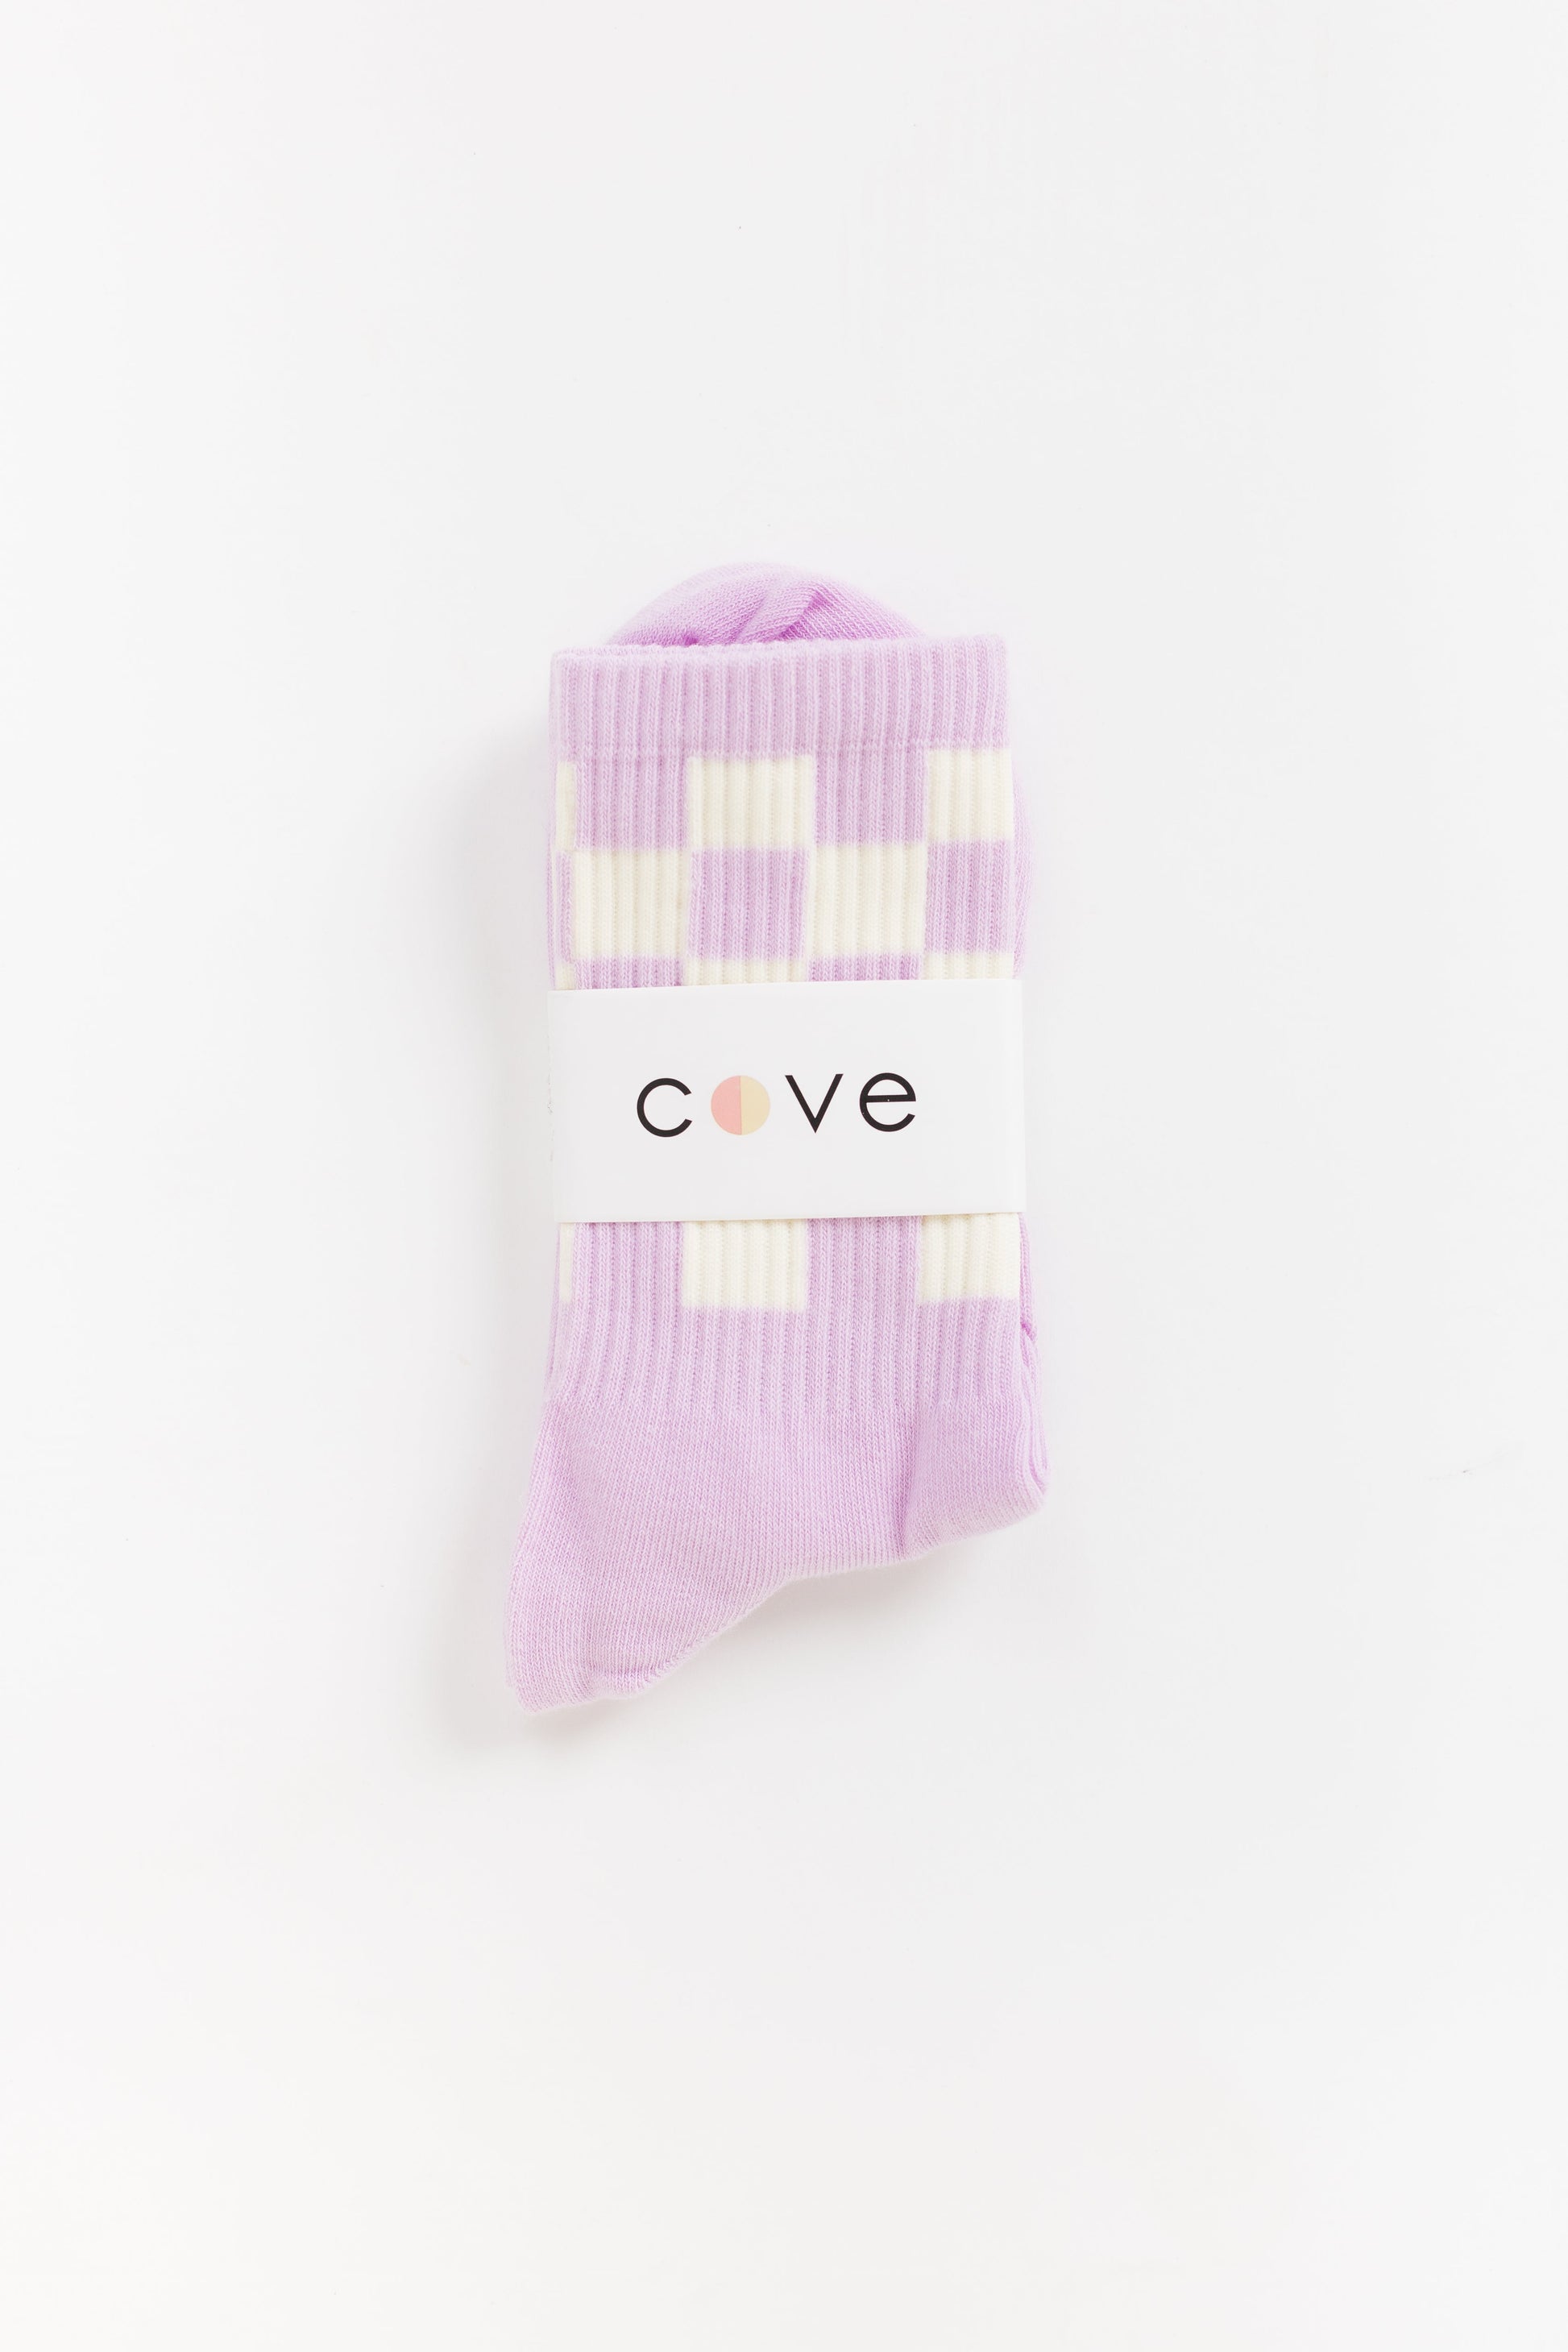 Checker Retro Socks WOMEN'S SOCKS Cove Accessories Lavender/White OS 